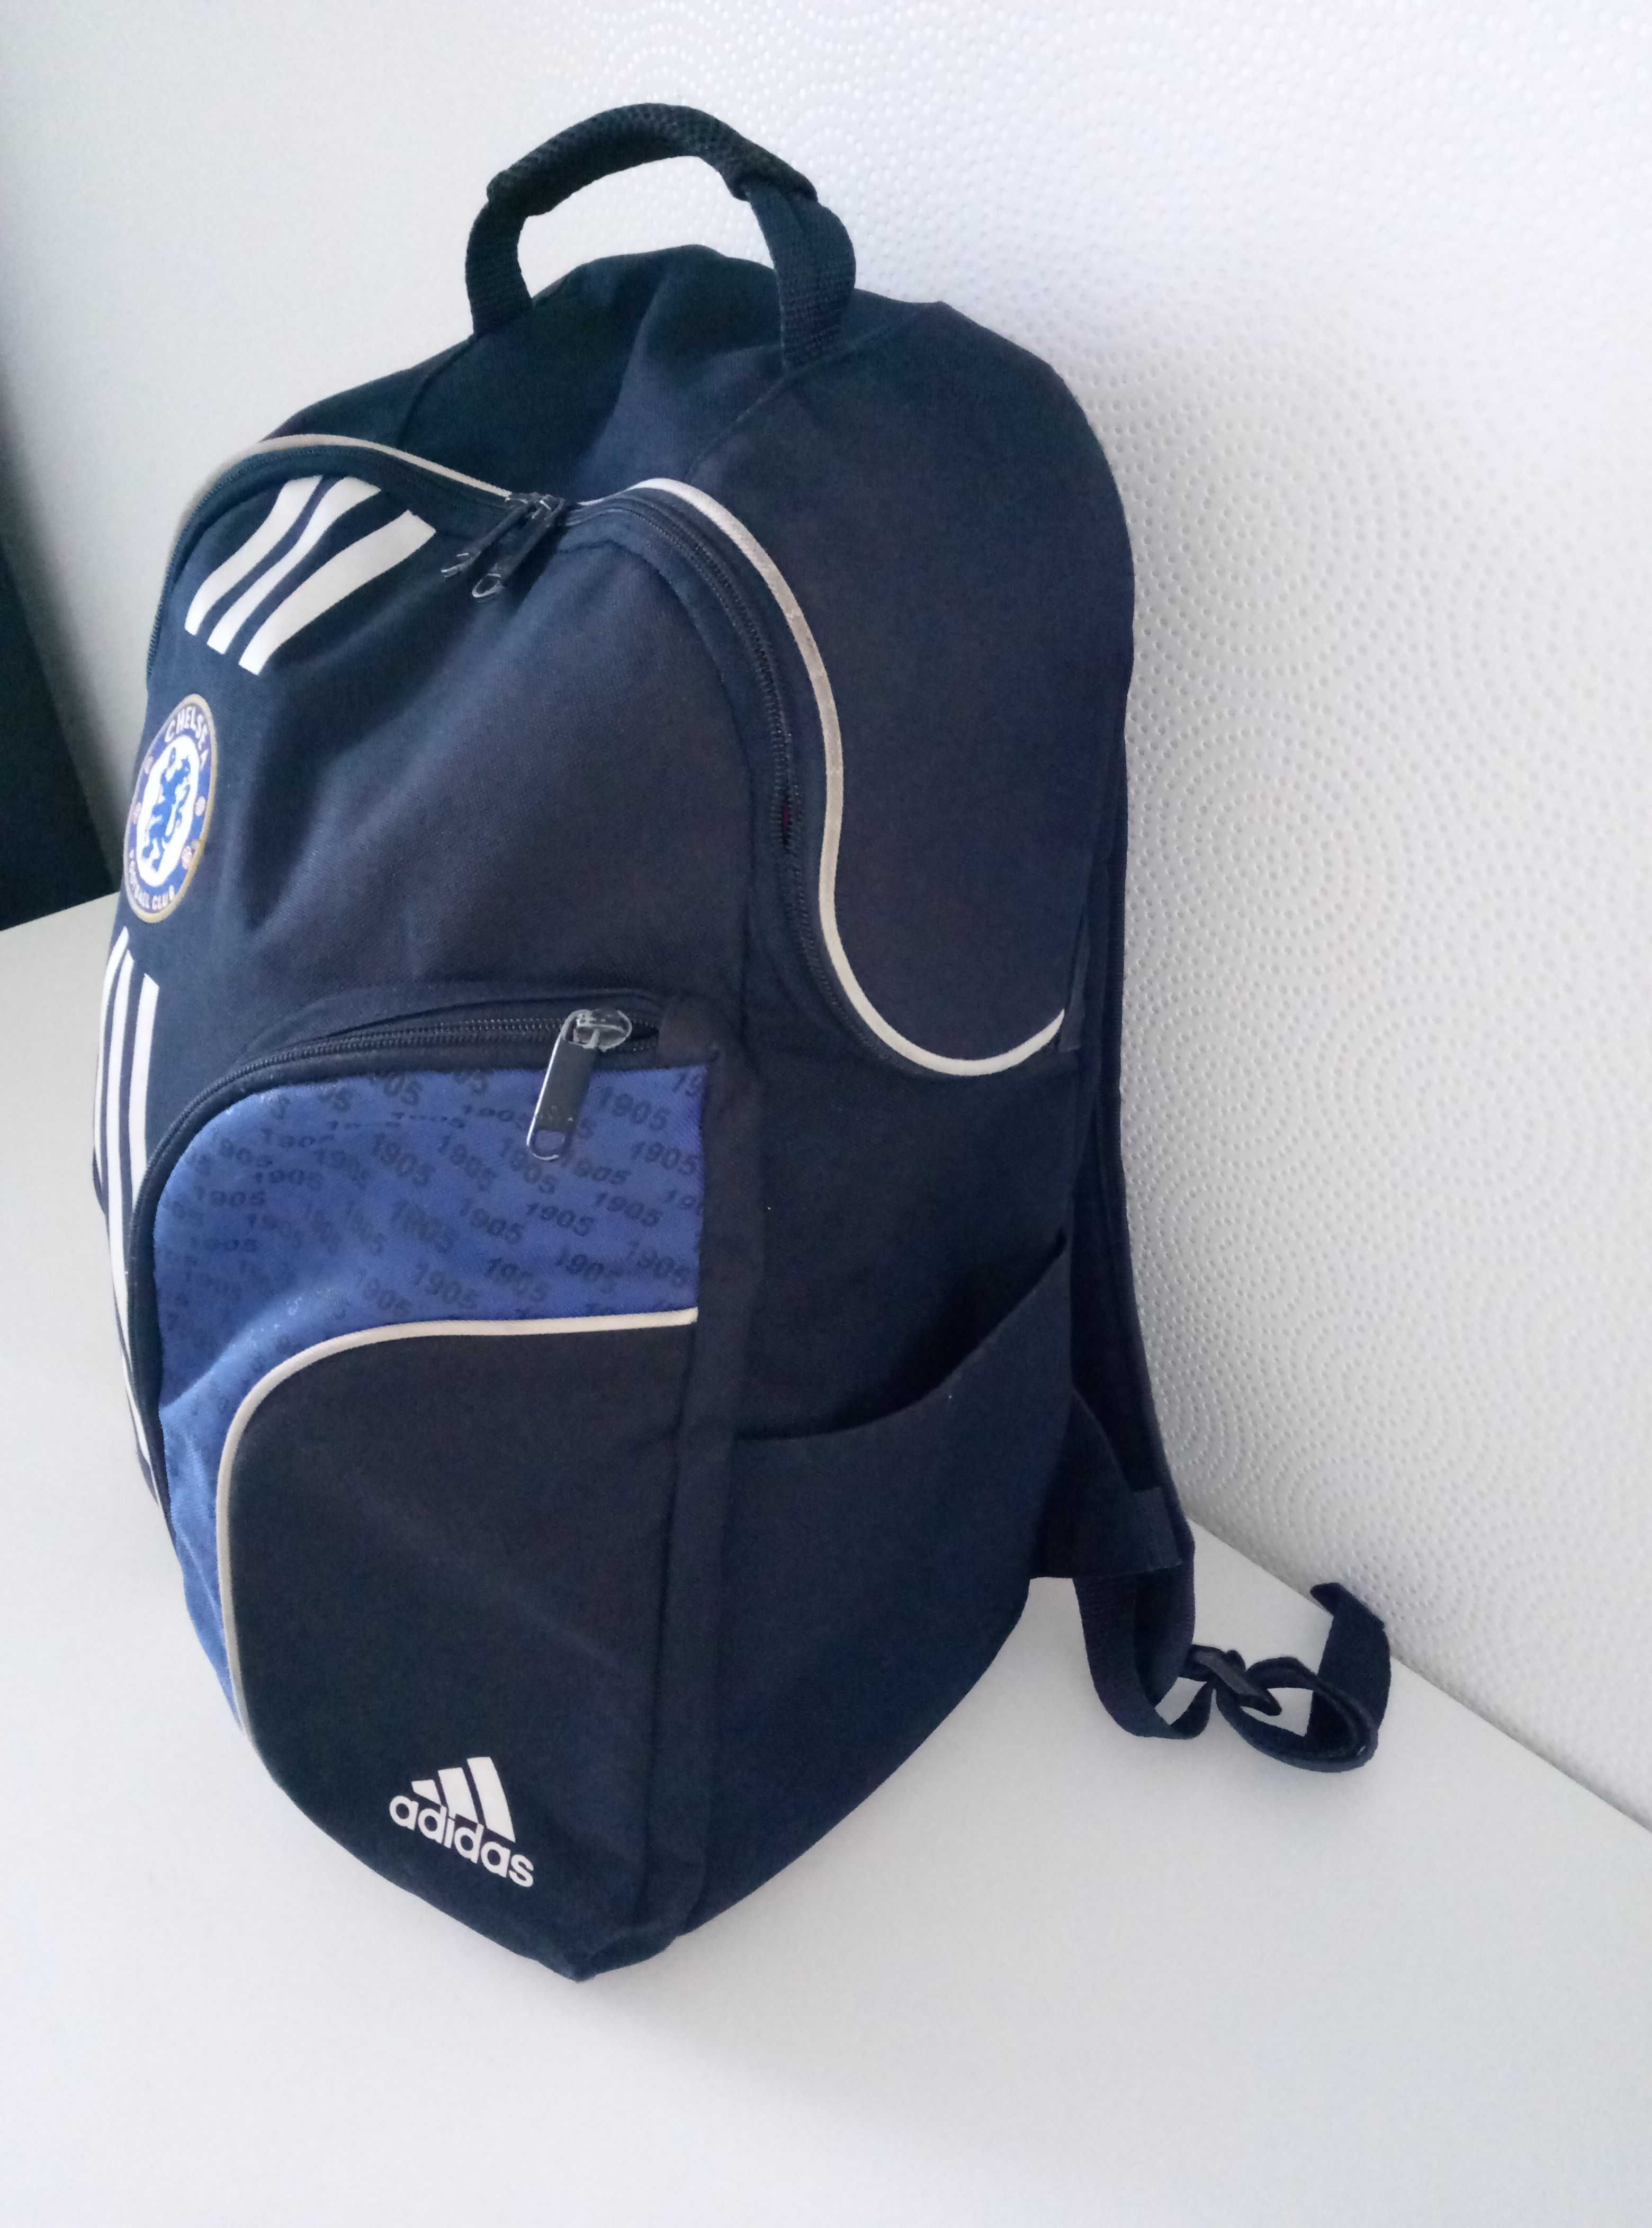 Рюкзак футбольный АDIDAS CHELSI. Размер 43 х 40 х 18 см.